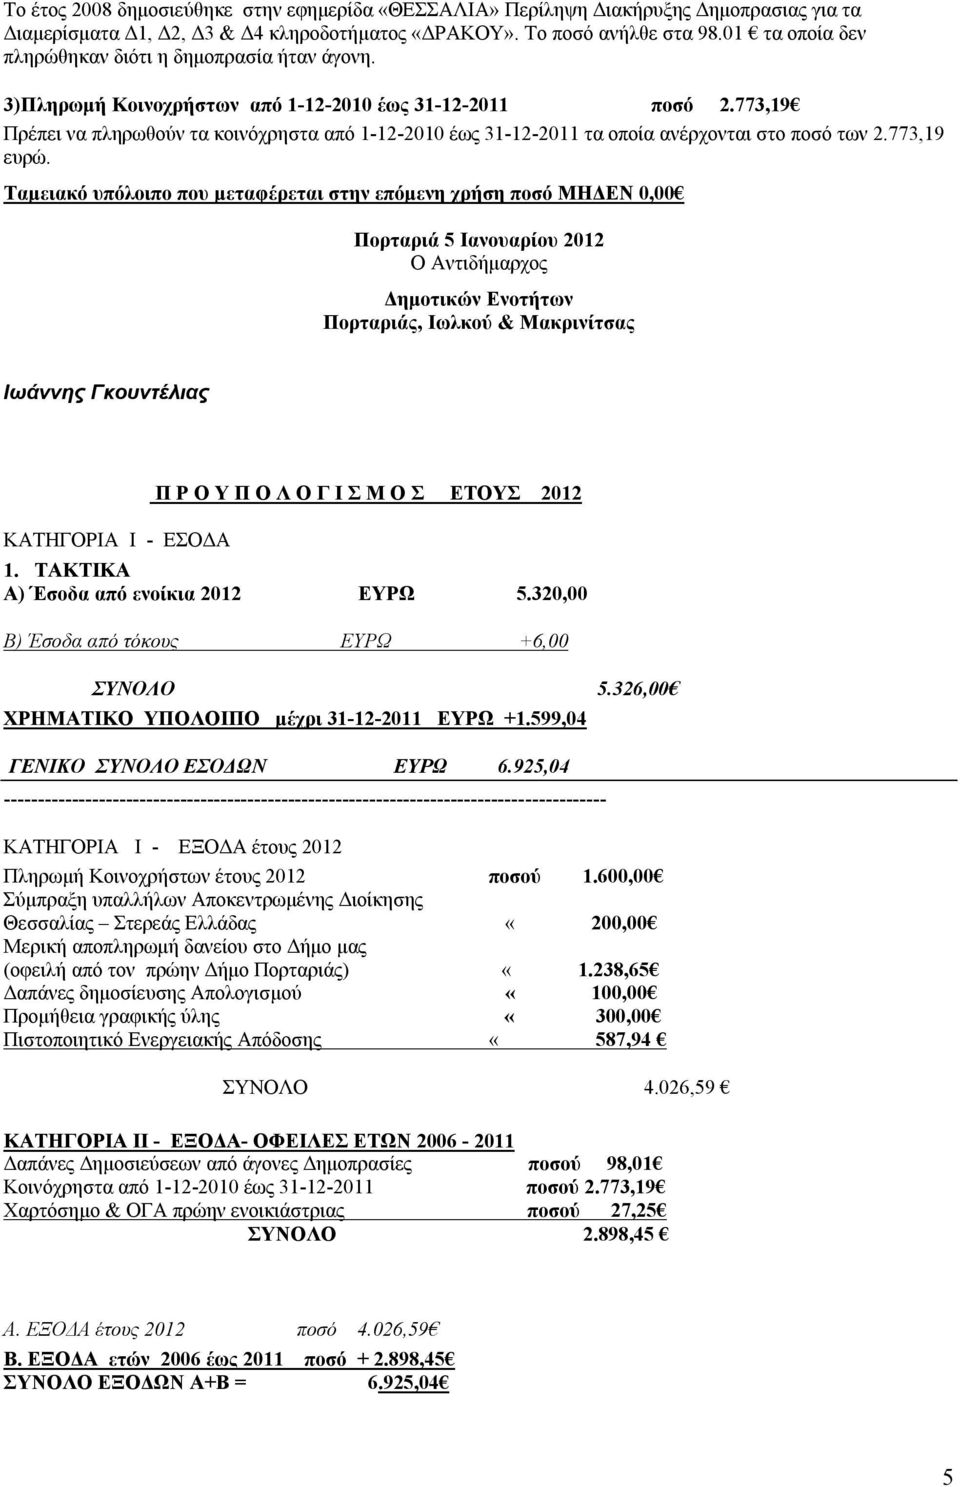 773,19 Πρέπει να πληρωθούν τα κοινόχρηστα από 1-12-2010 έως 31-12-2011 τα οποία ανέρχονται στο ποσό των 2.773,19 ευρώ.